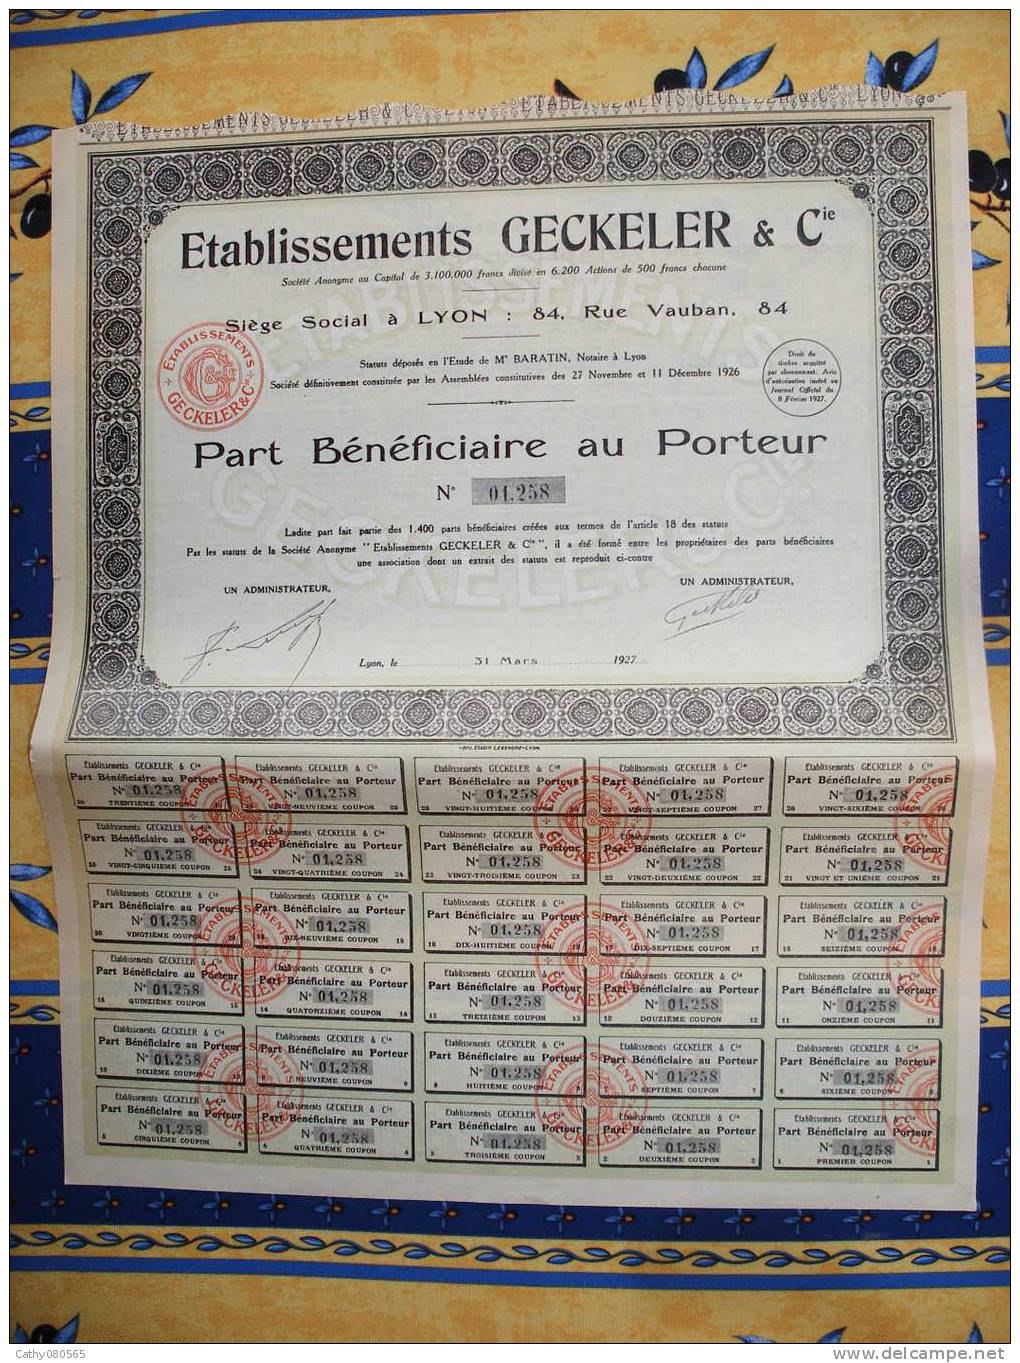 RARE PART BENEFICIAIRE "ETS GECKELER" 1927(1400 PARTS ) // LYON // RHONE ALPES - G - I